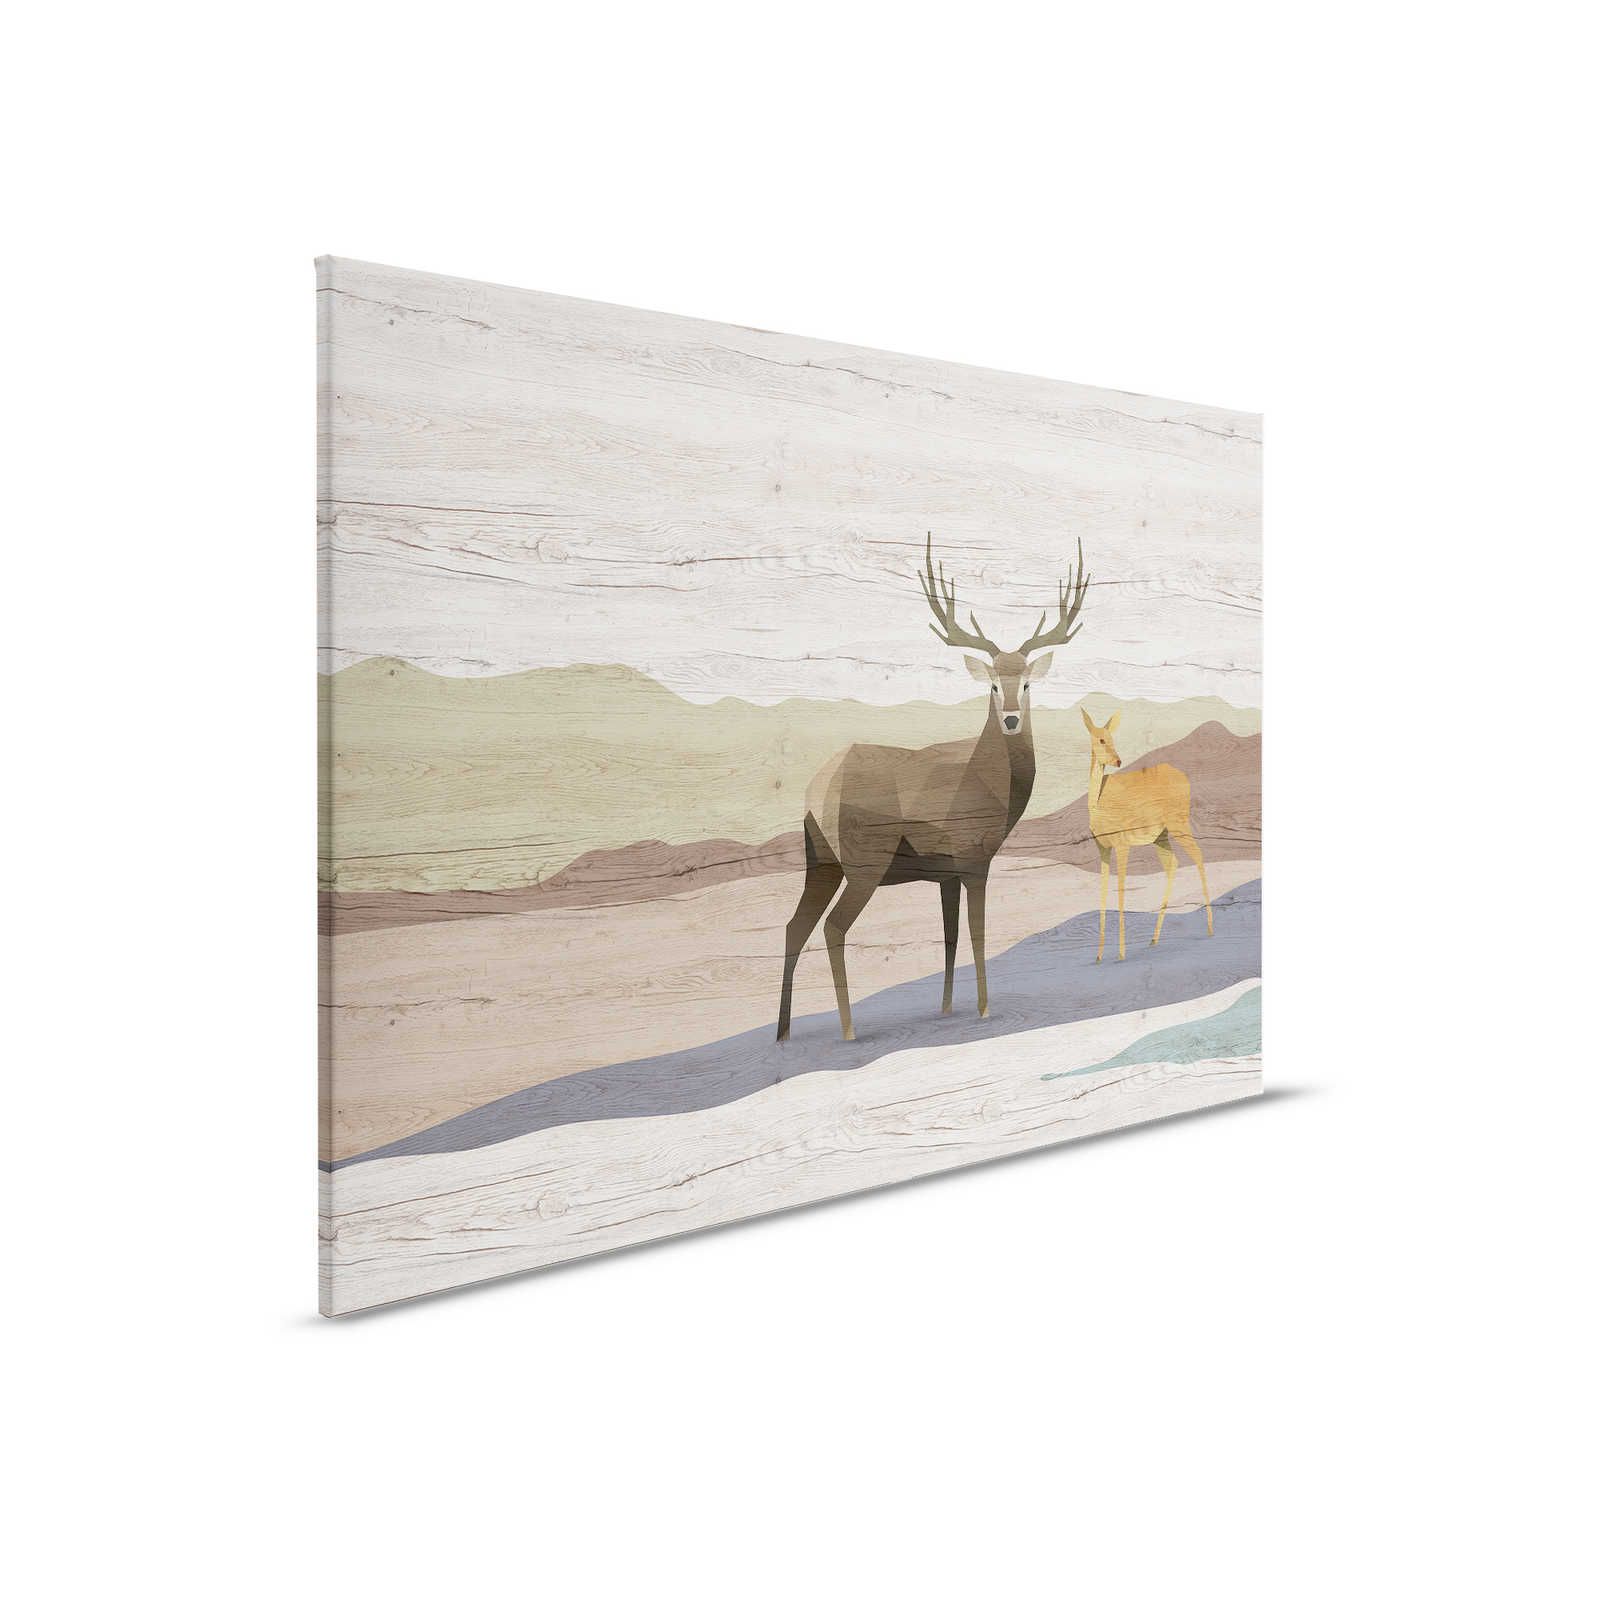 Yukon 2 - Tela dipinta con venature del legno, disegno di cervi e caprioli - 0,90 m x 0,60 m
